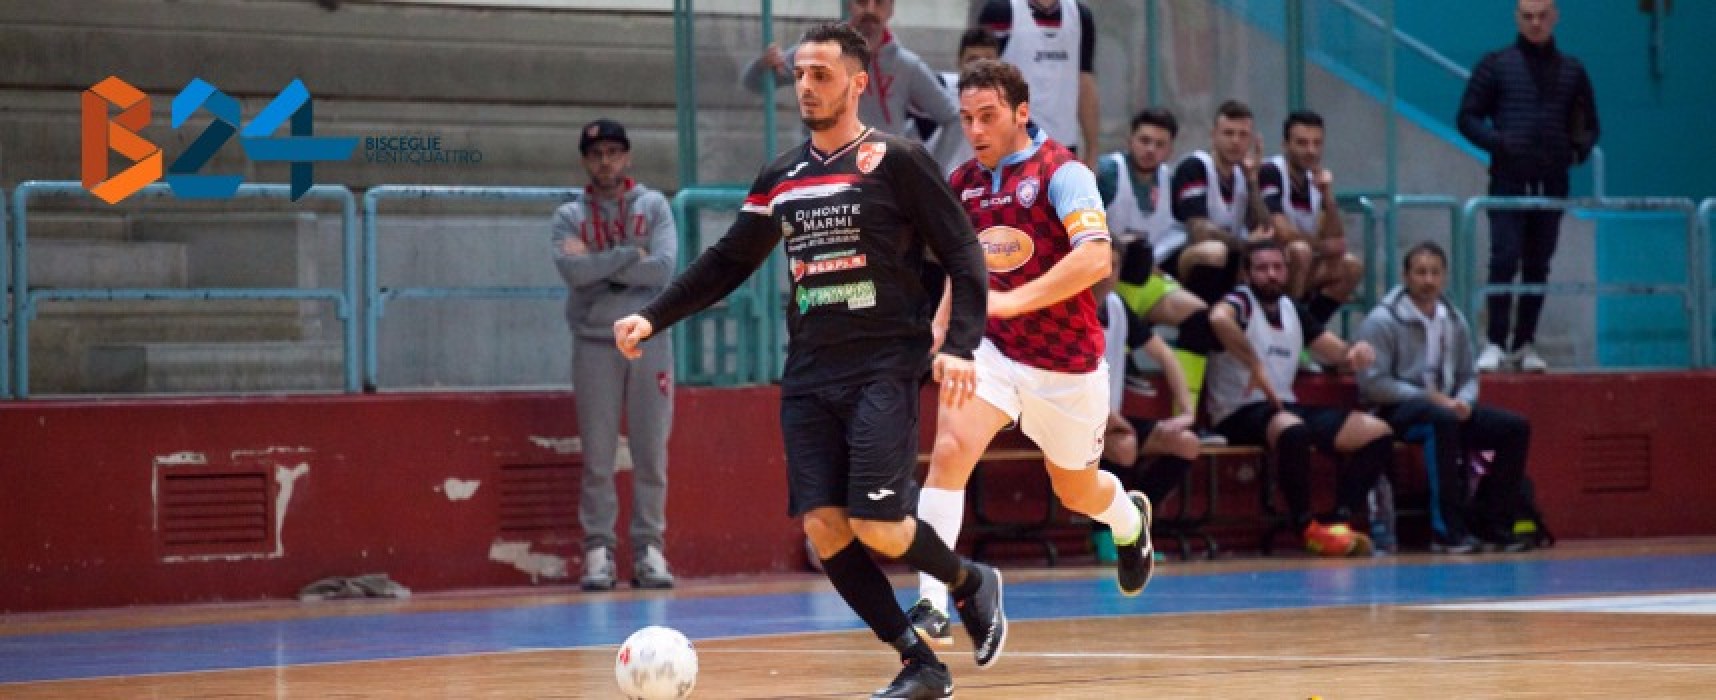 Futsal, Serie C1: vince la Diaz, sconfitta per il Nettuno / RISULTATI e CLASSIFICA